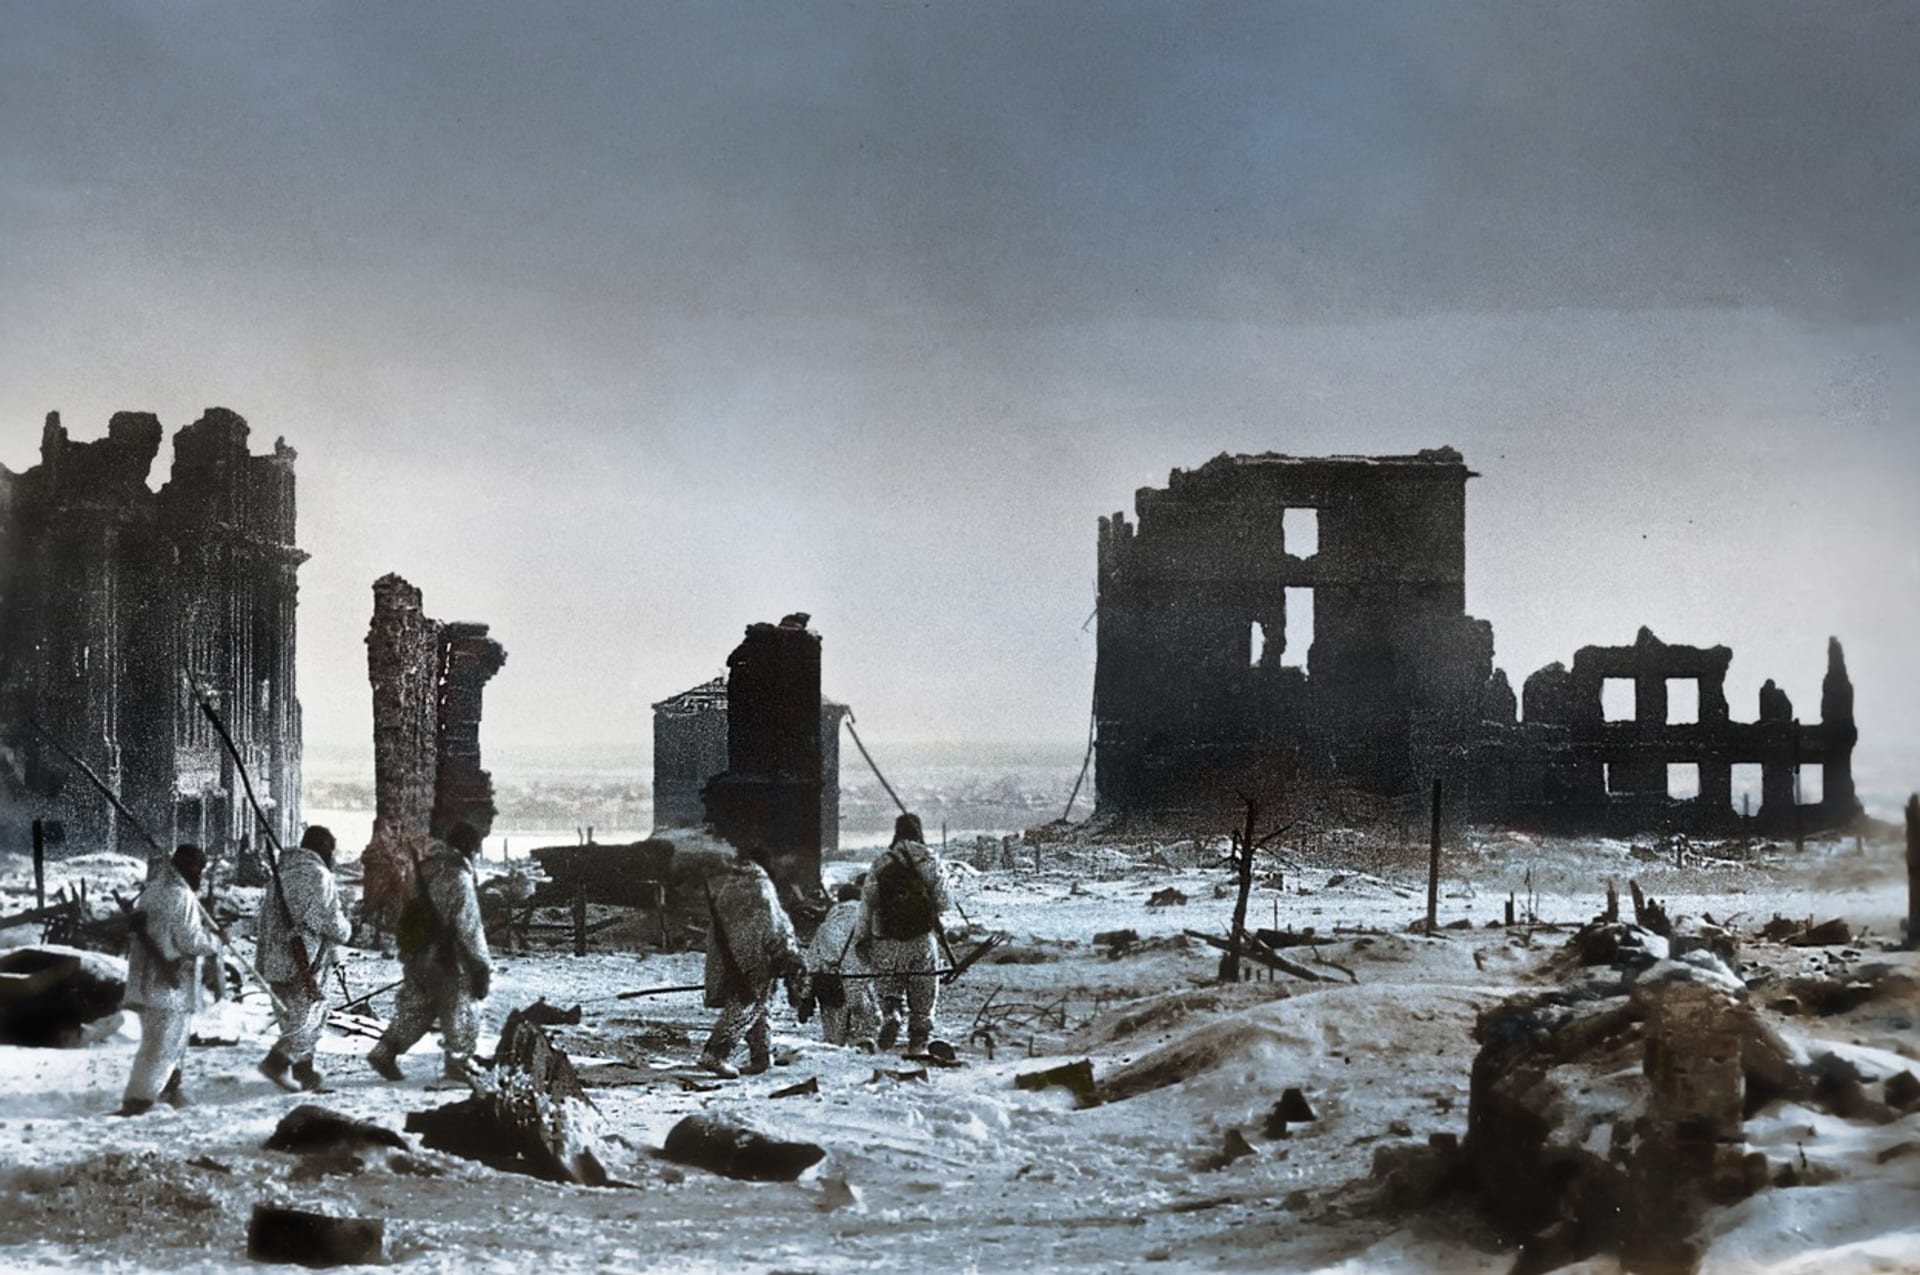 Sovětští vojáci postupují měsíční krajinou Stalingradu